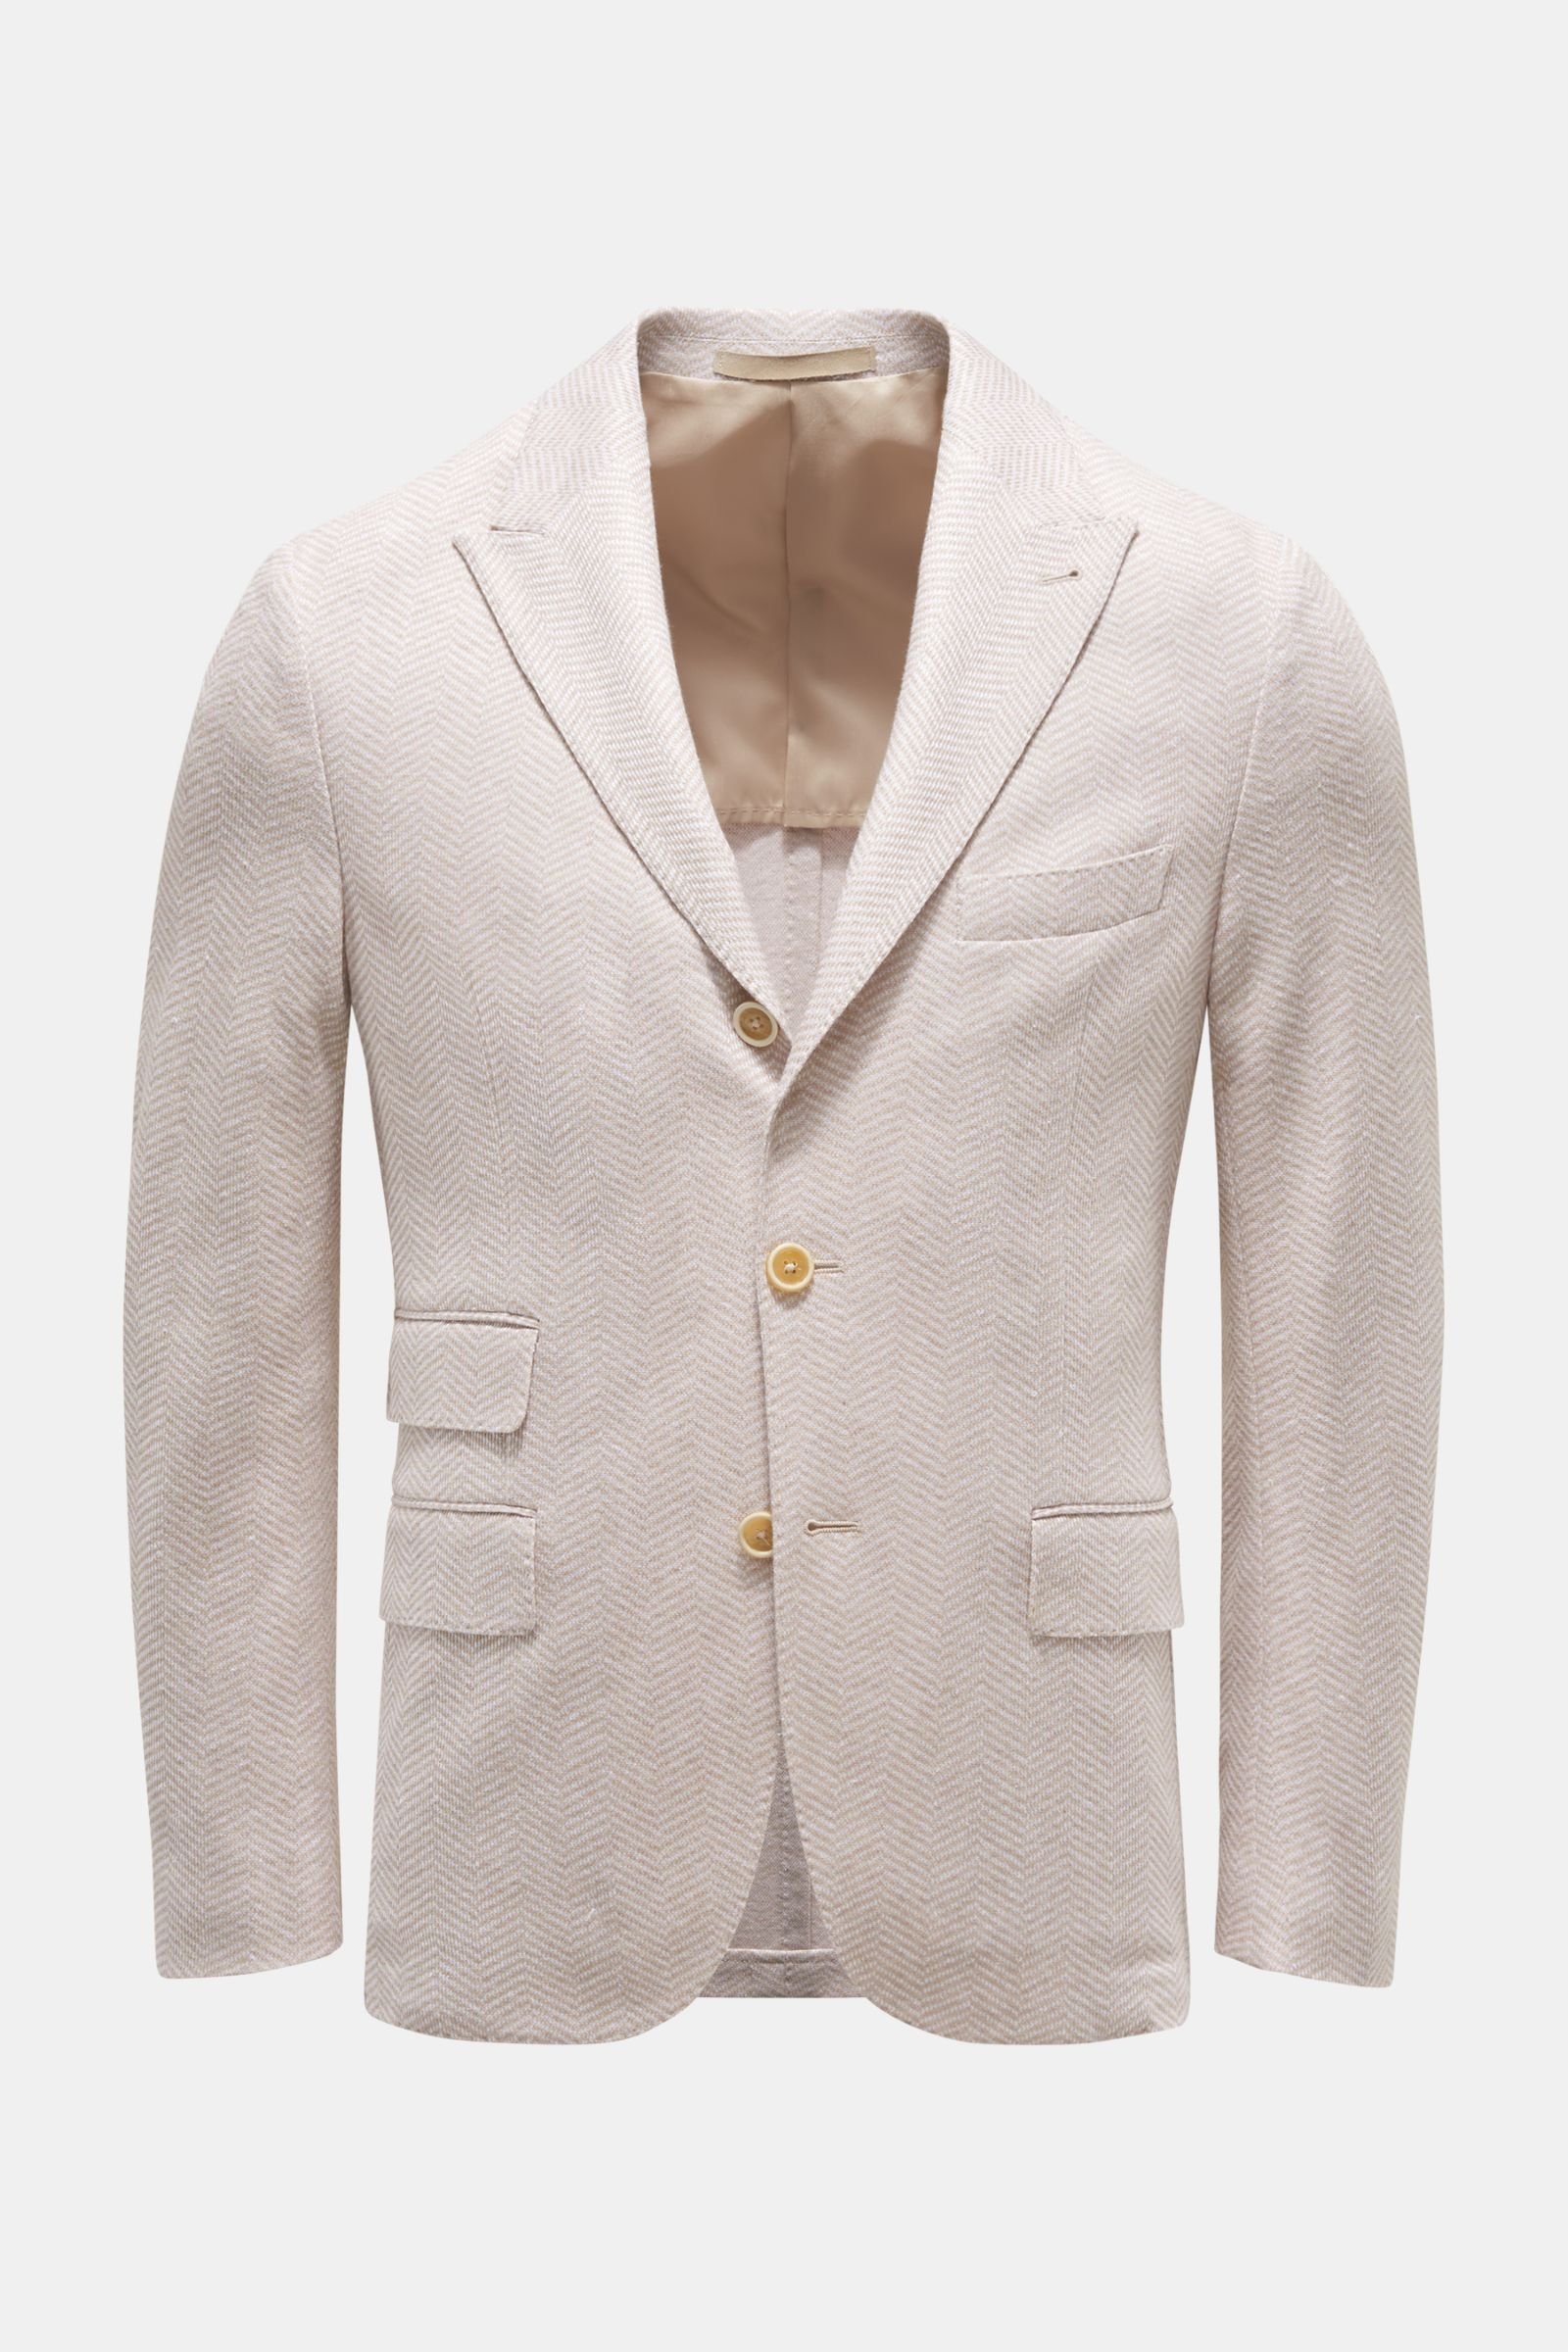 Jersey jacket beige/white patterned